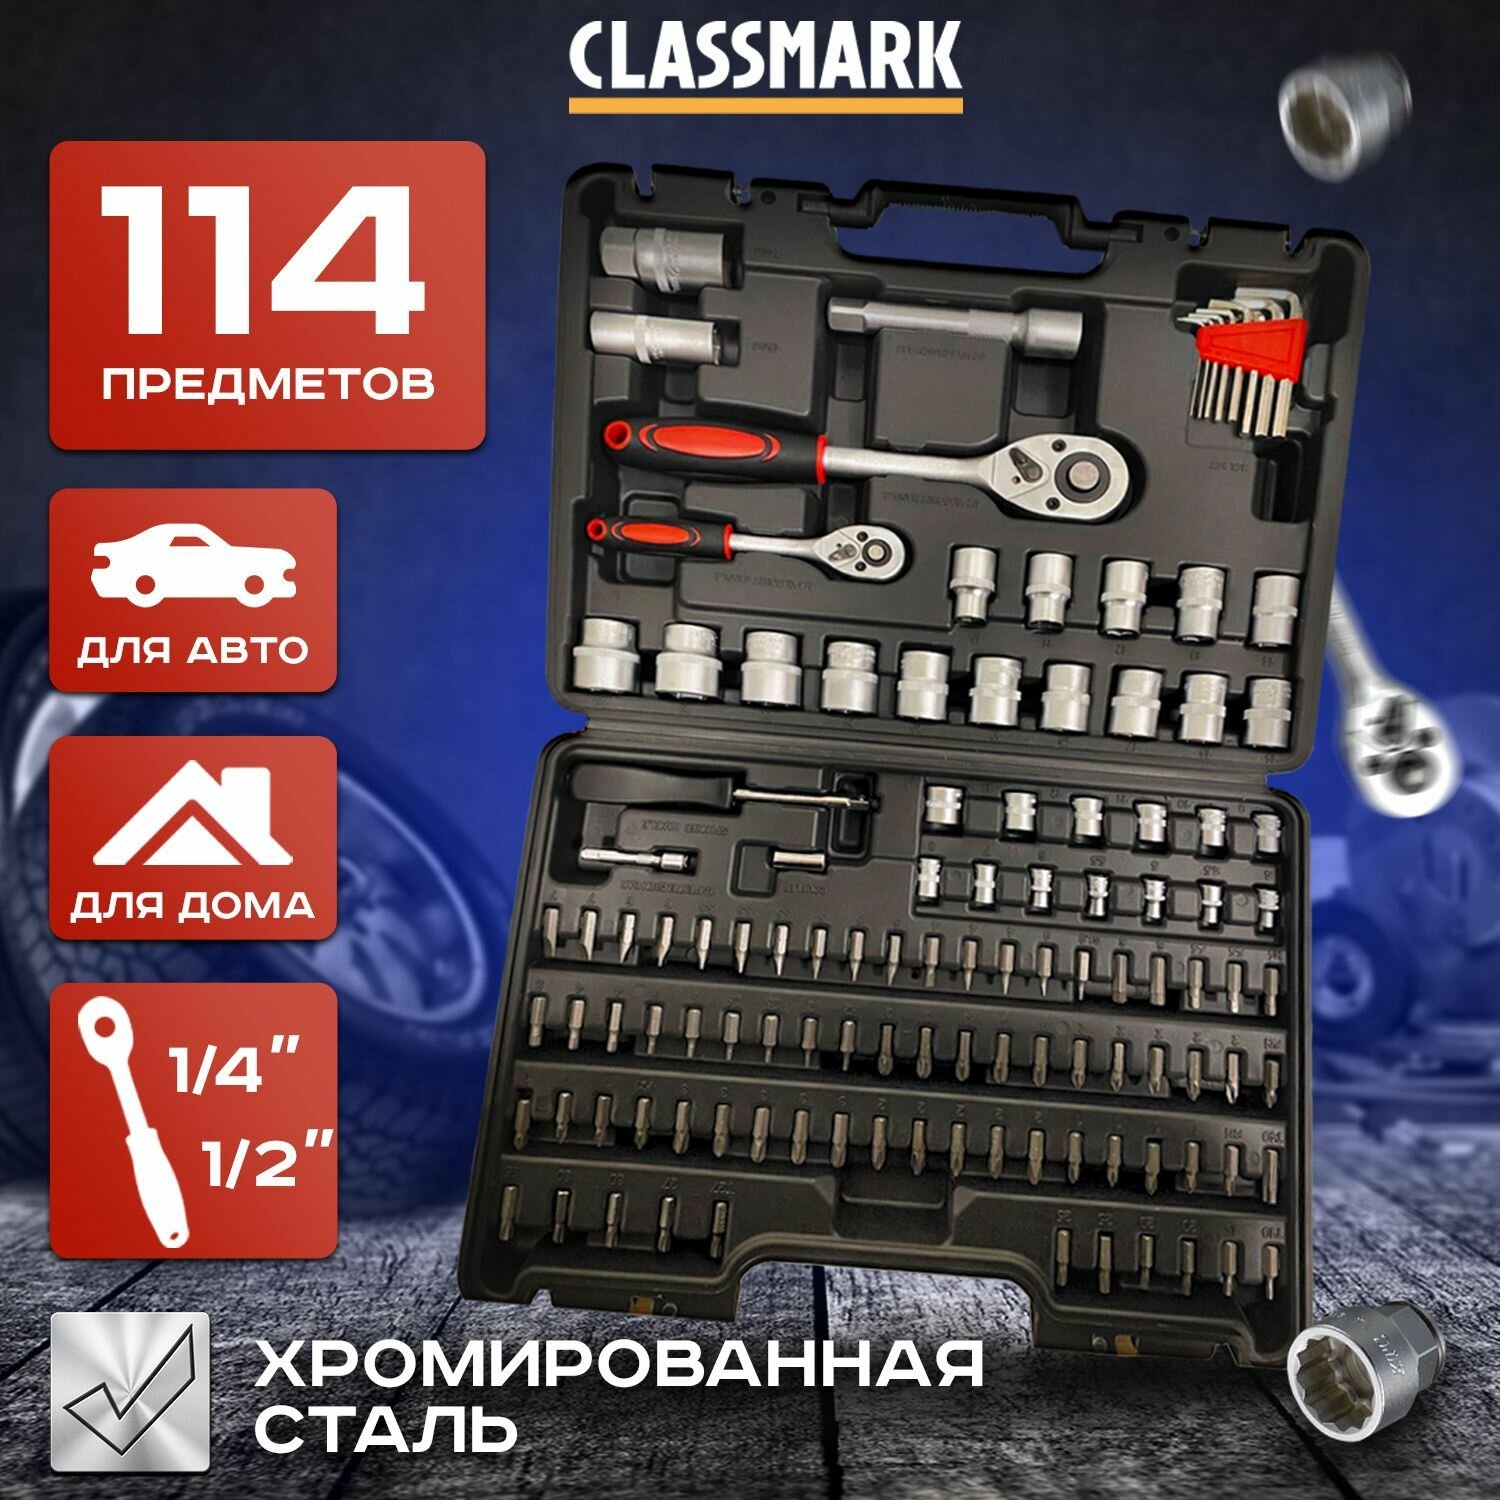 Classmark Набор инструментов для ремонта автомобиля в кейсе 114 пр